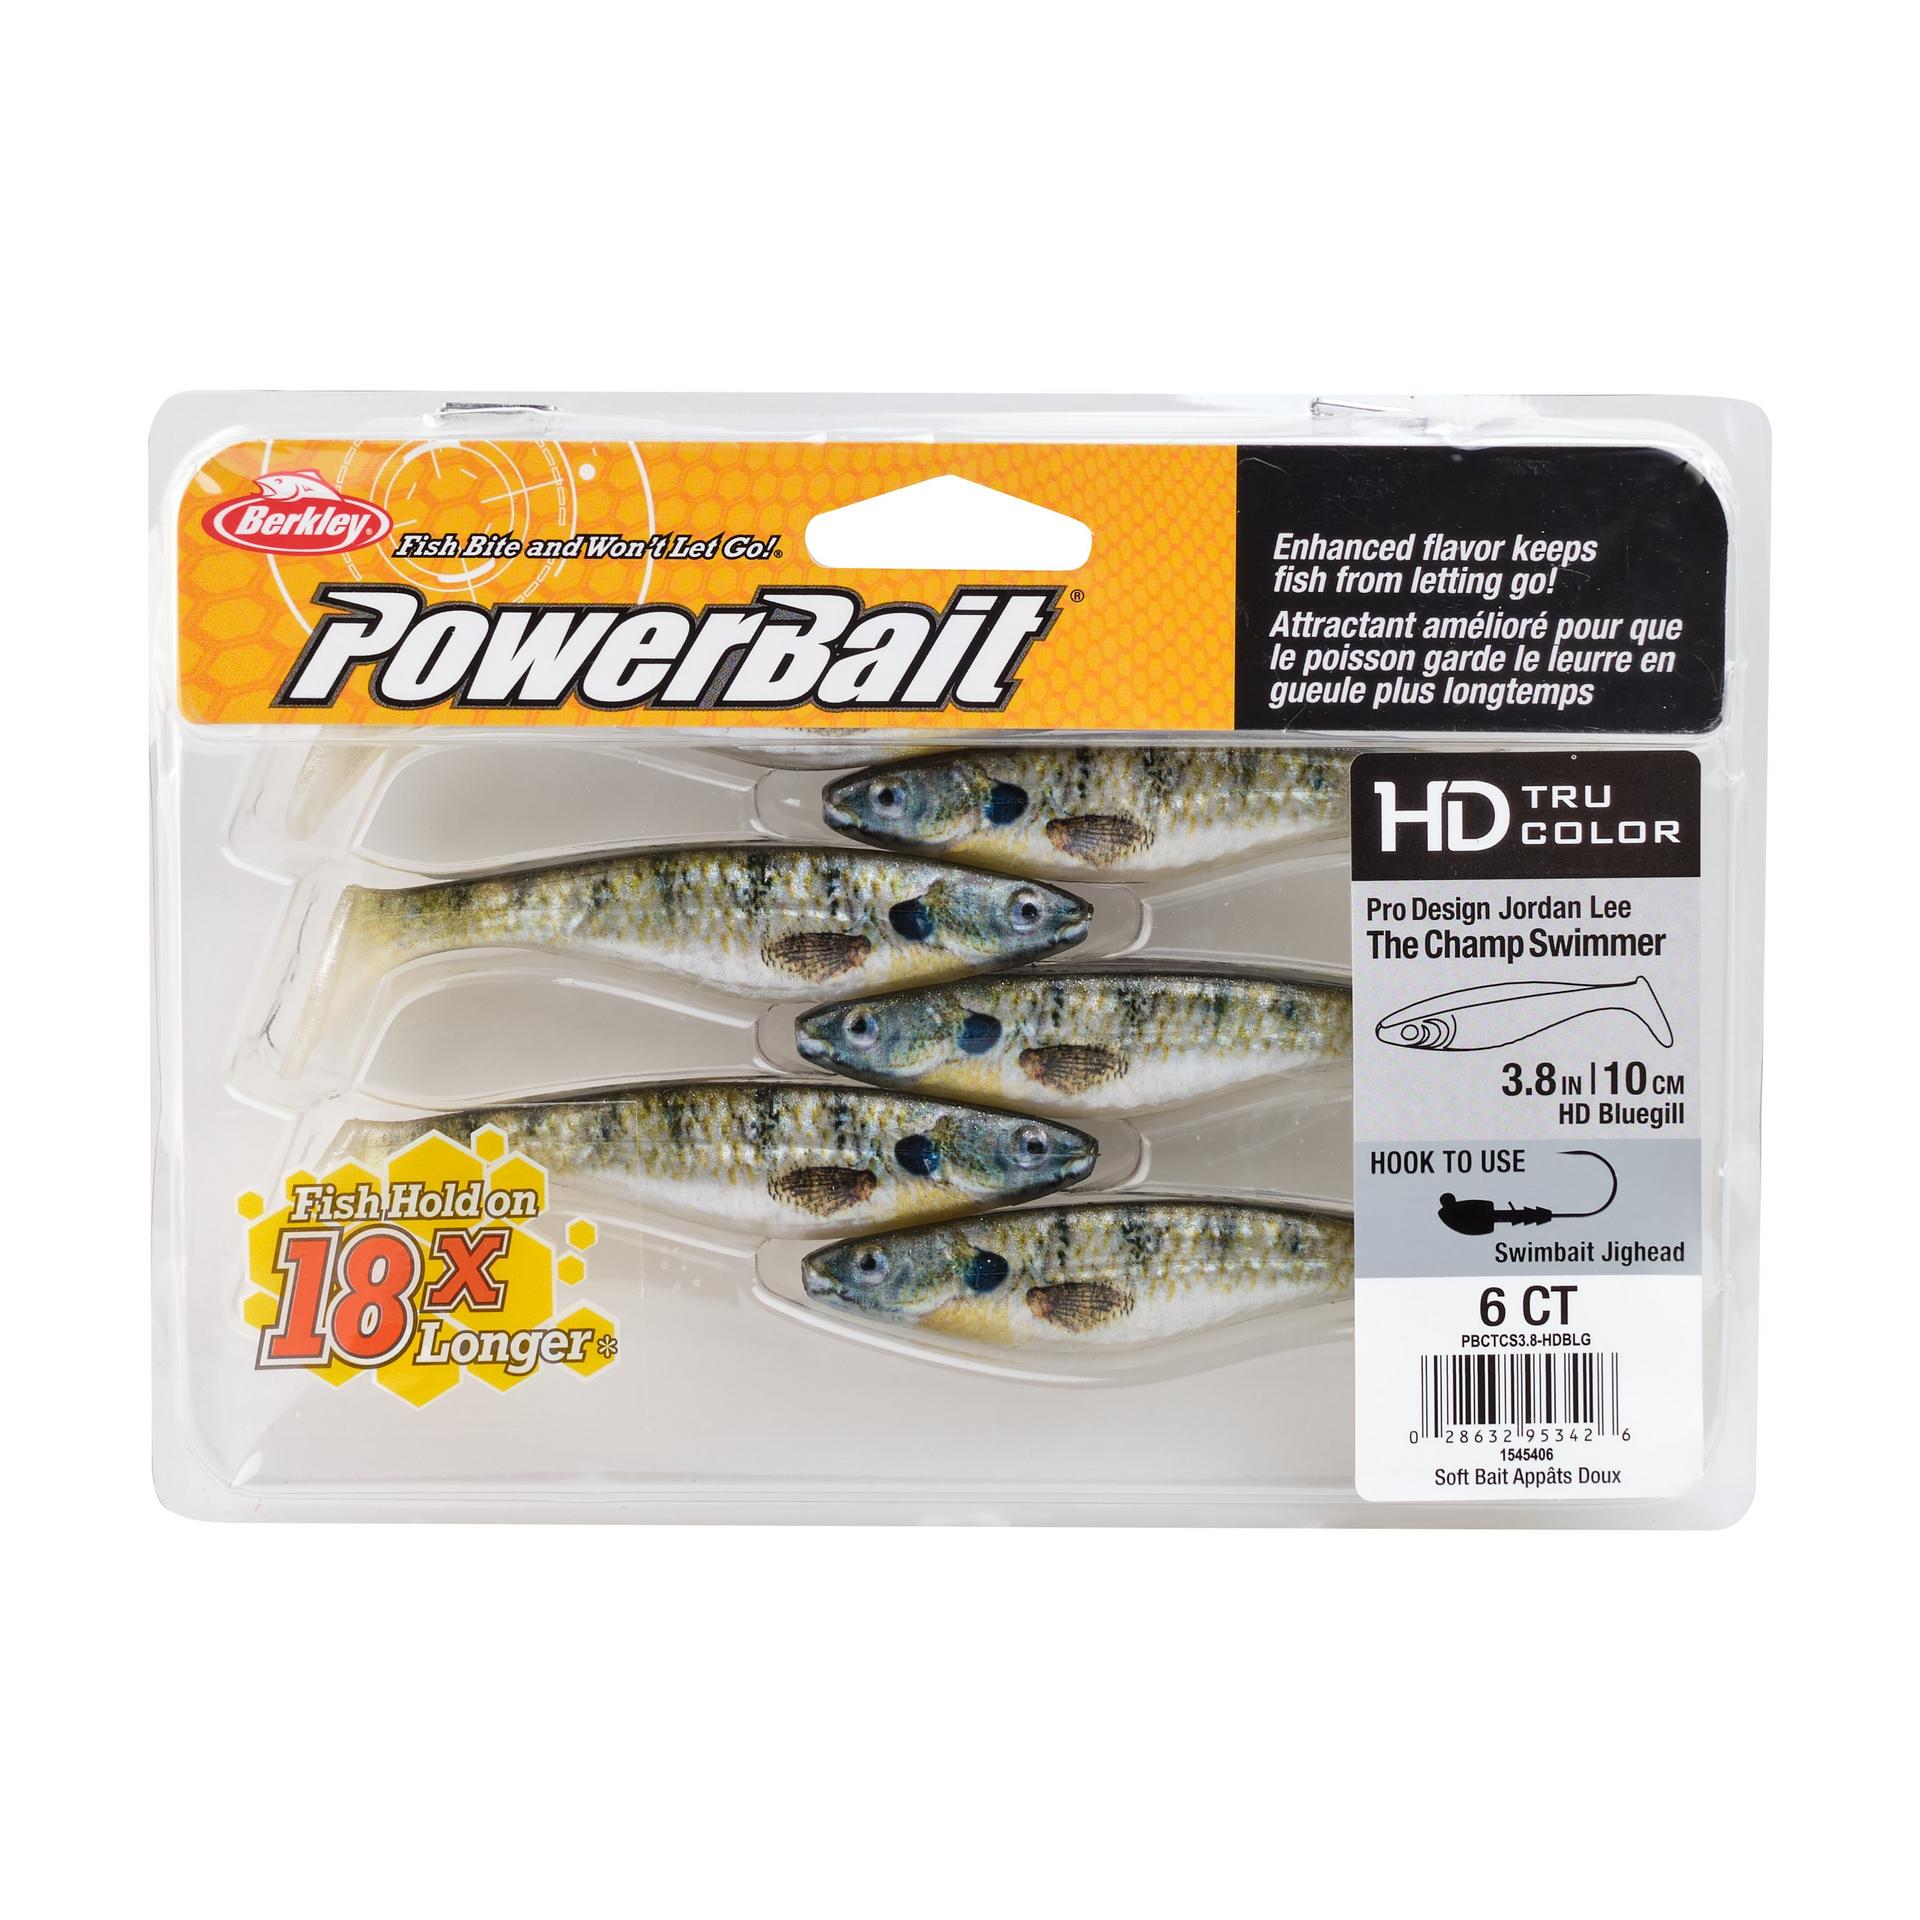 PowerBaitTheChampSwimmer HDBluegill 3.8in PKG | Berkley Fishing